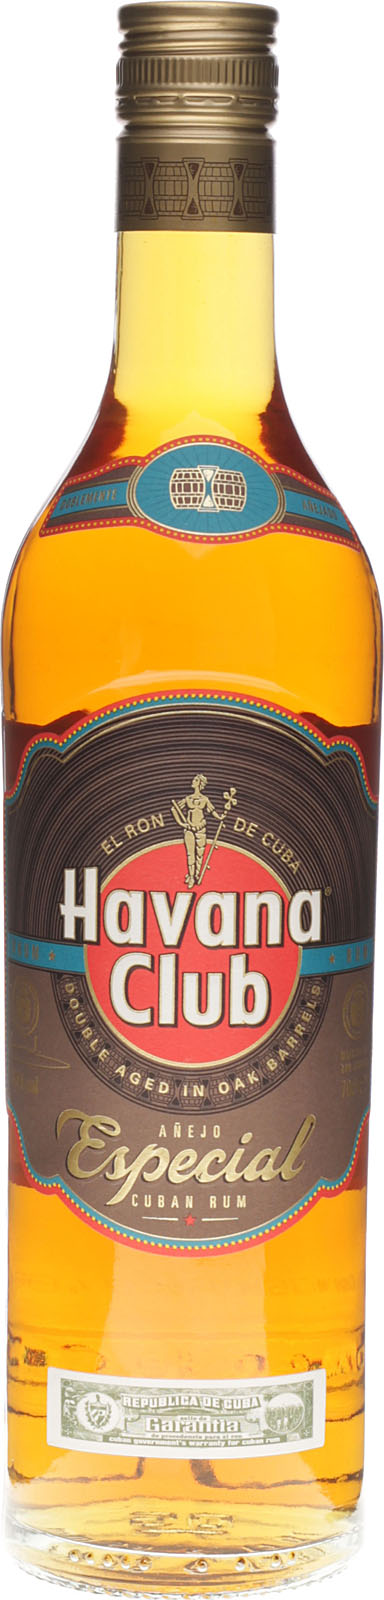 Especial Rum mit ein Club Anejo aus 700 Cuba ist Havana